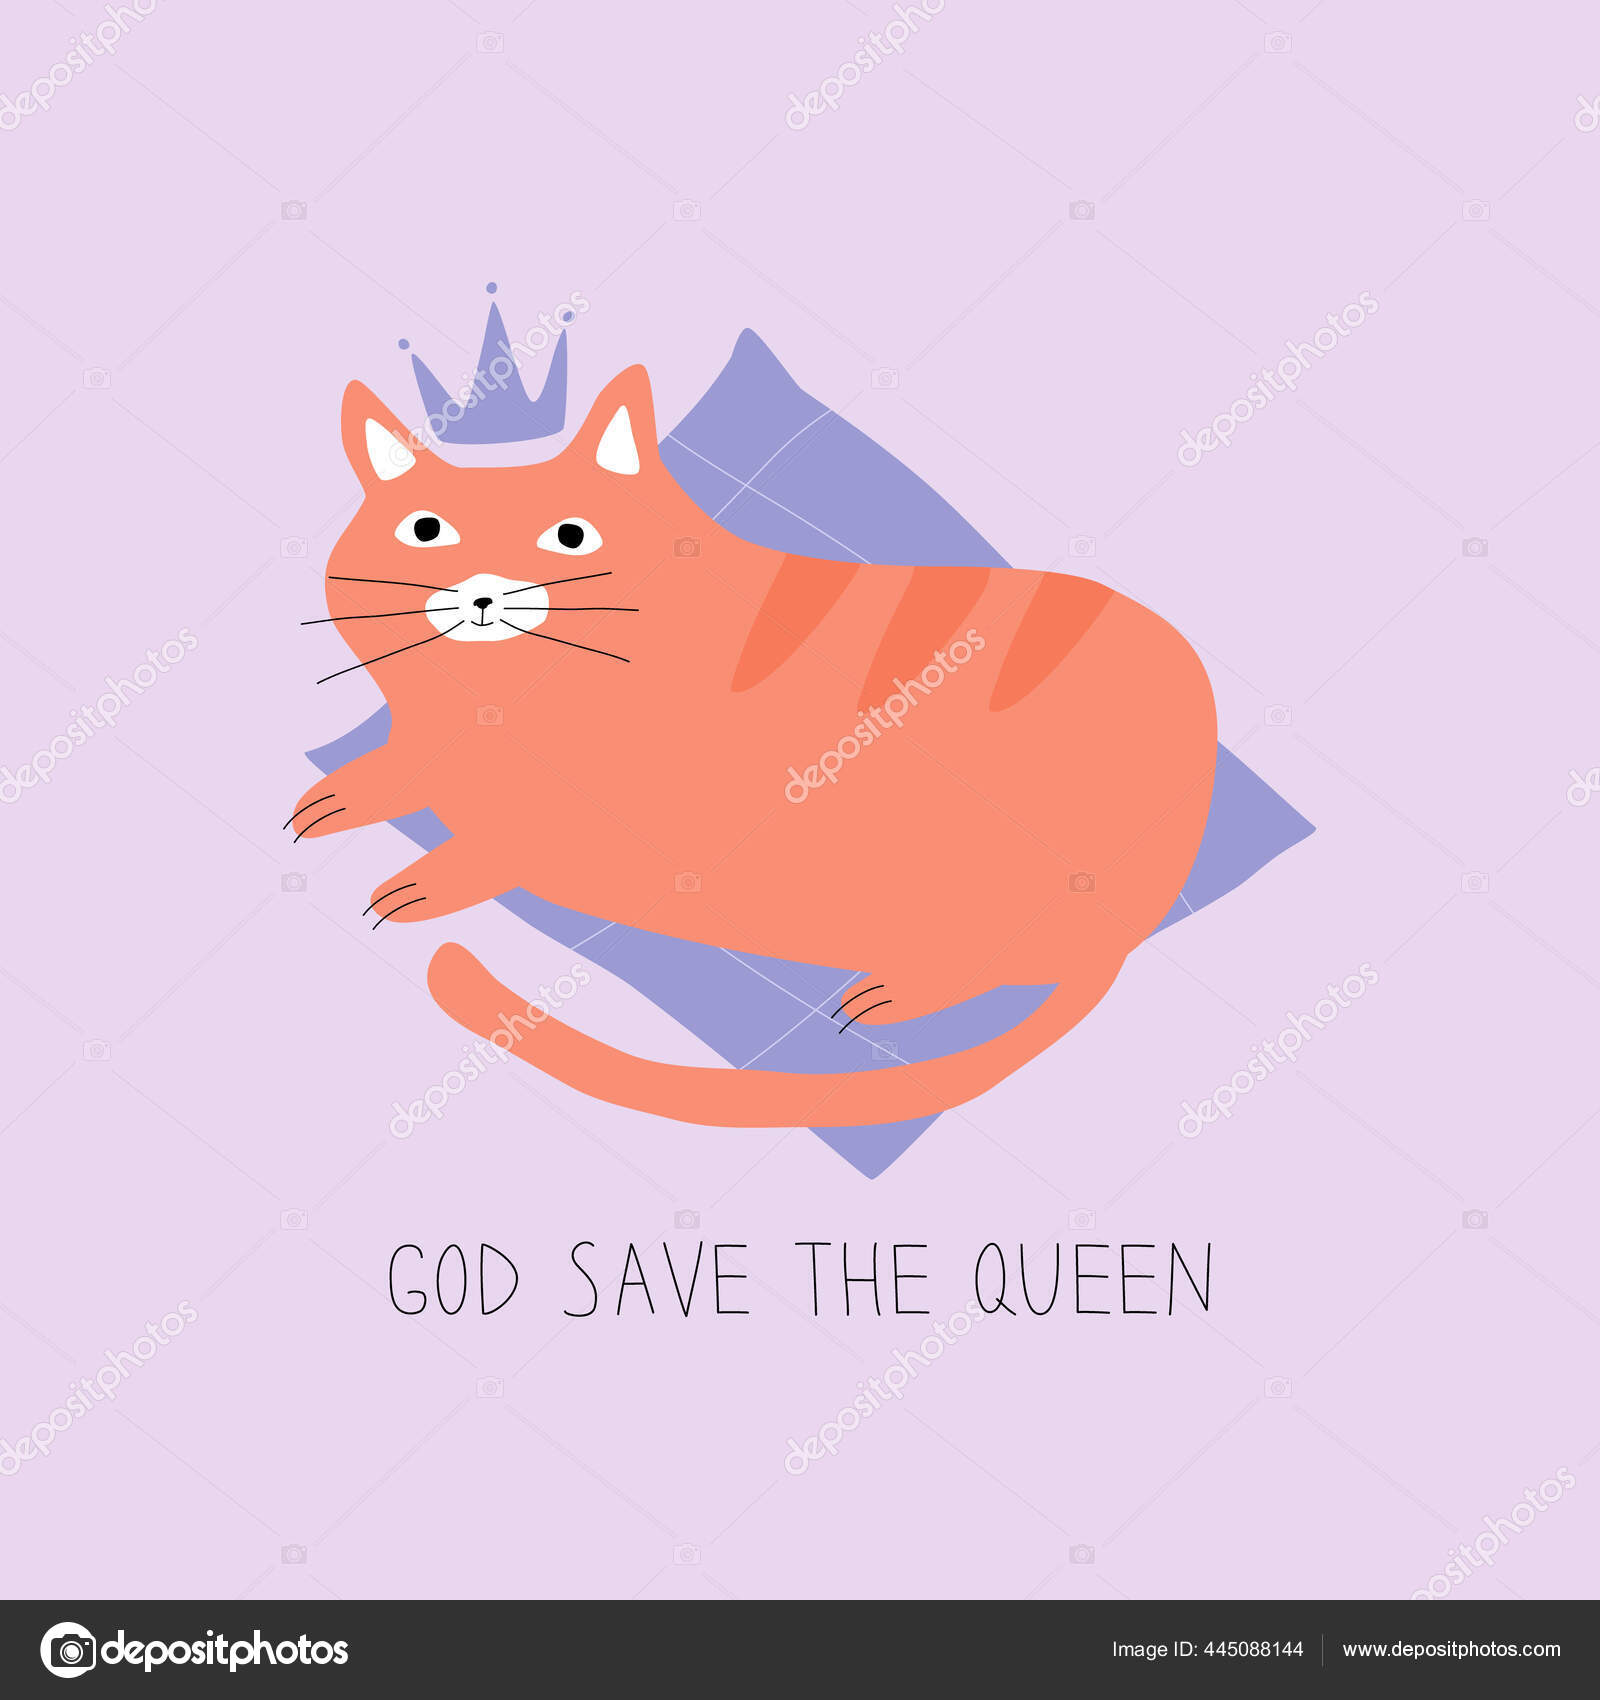 可爱的生姜猫头戴皇冠躺在紫色枕头上橙色猫后上帝拯救女王有趣的卡片doodle矢量说明 图库矢量图像 C Frauhellen